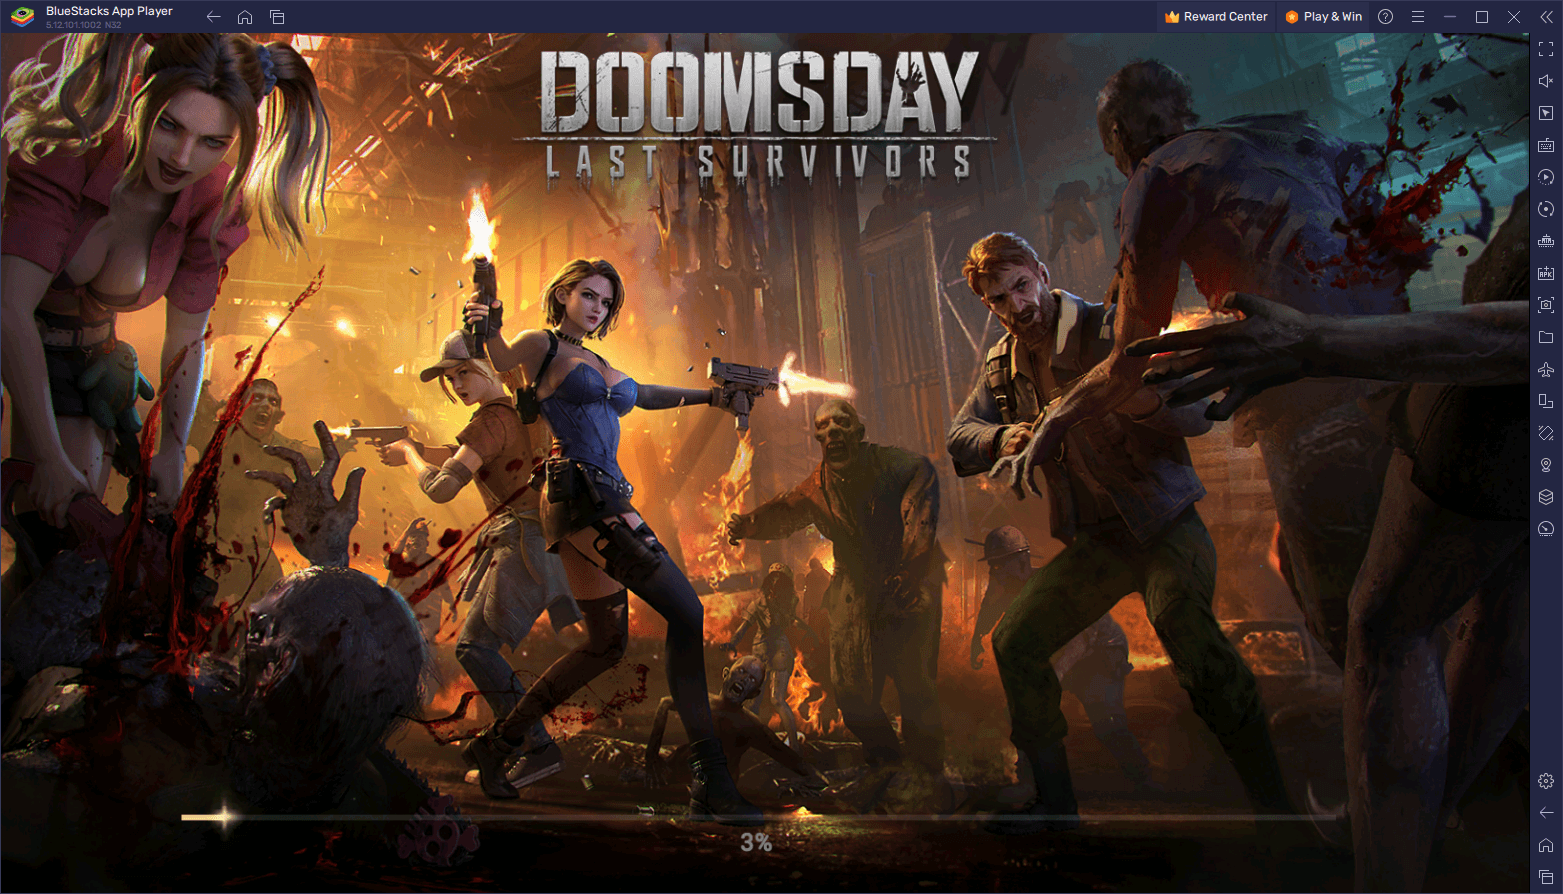 Выживайте и процветайте в Doomsday: Last Survivors с этим новым промокодом